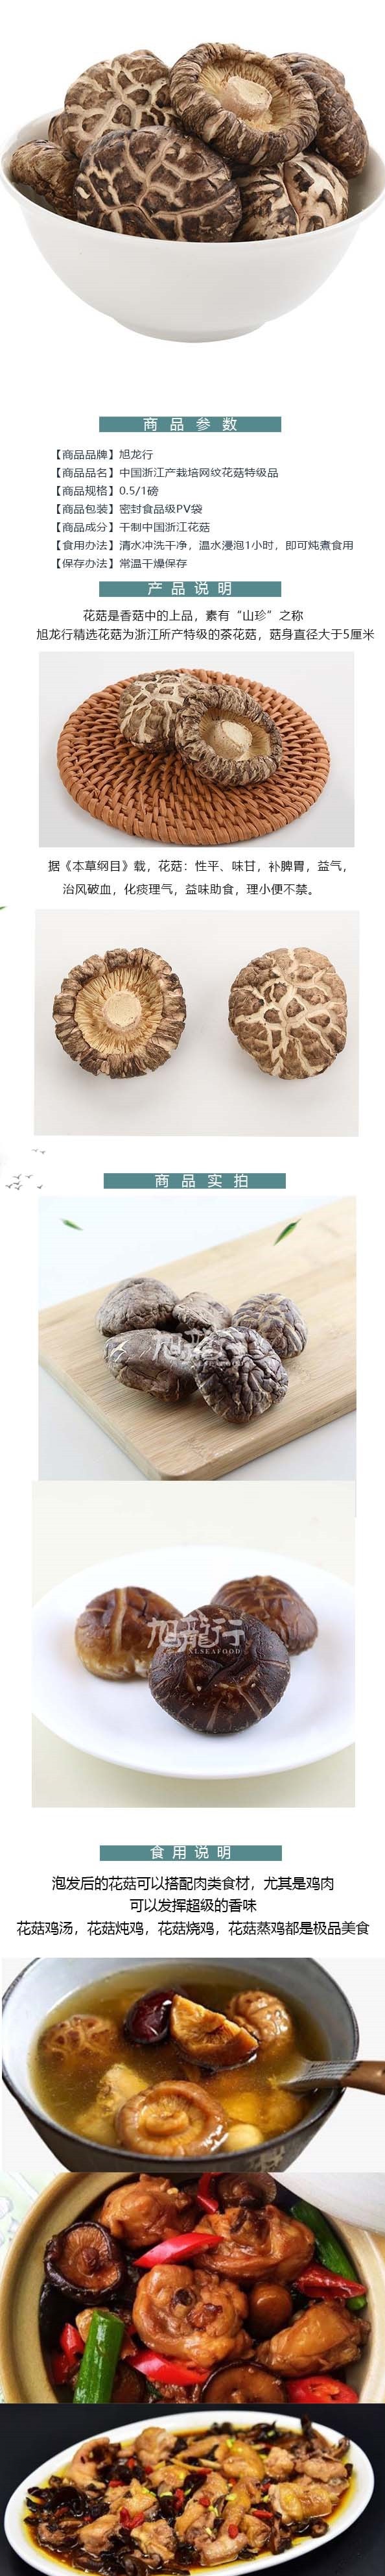 美国旭龙行特级韩式白花菇 中国产足干网纹花菇 454克 16oz